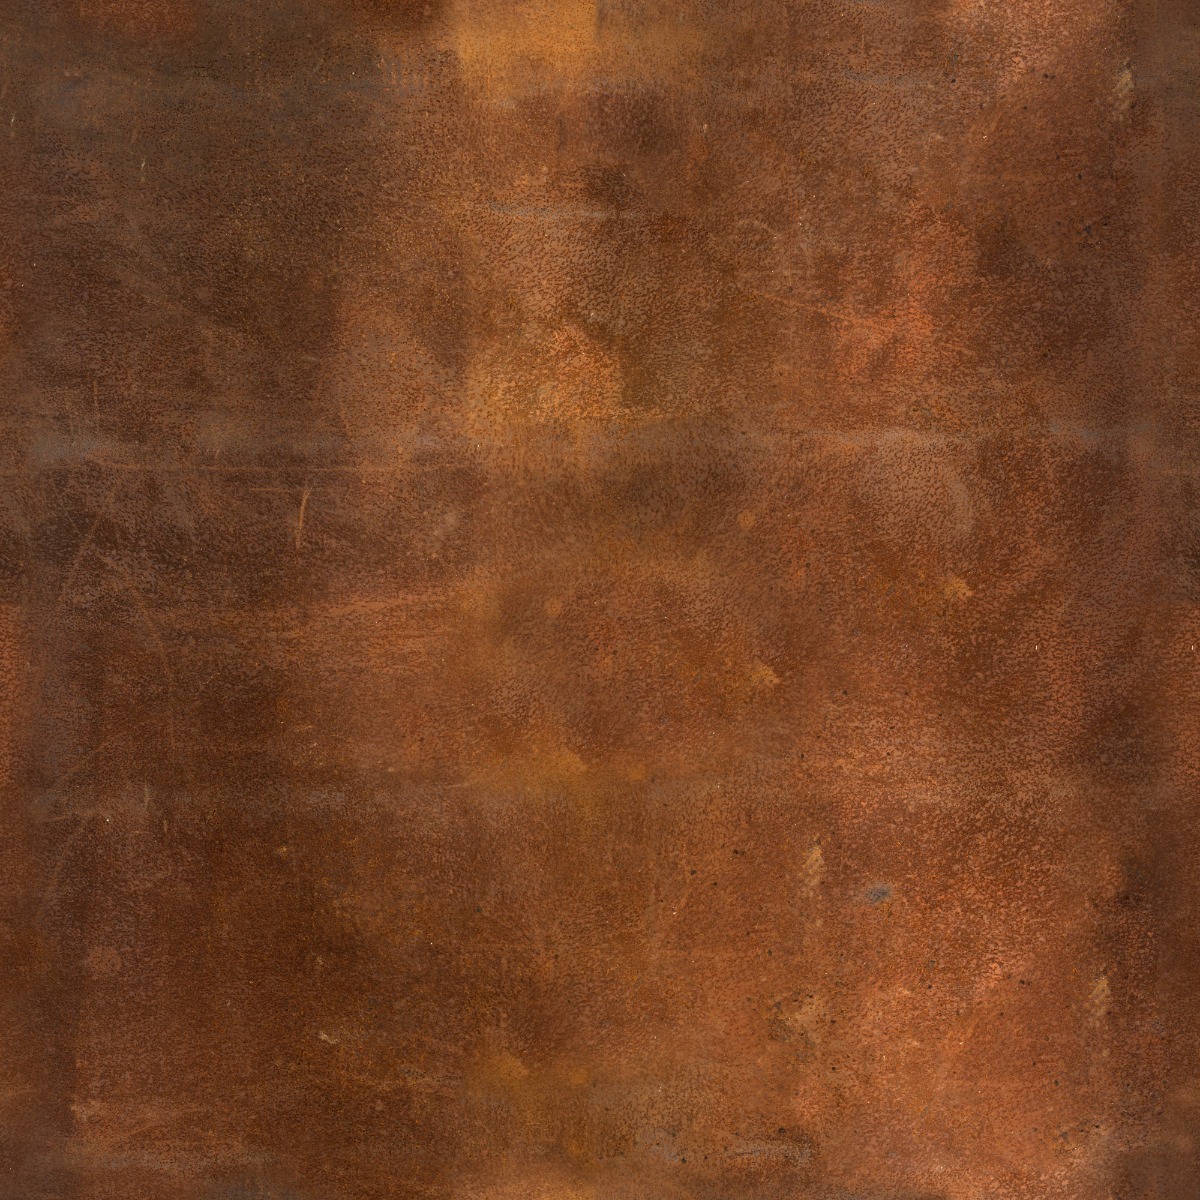 Rust metal textures фото 43